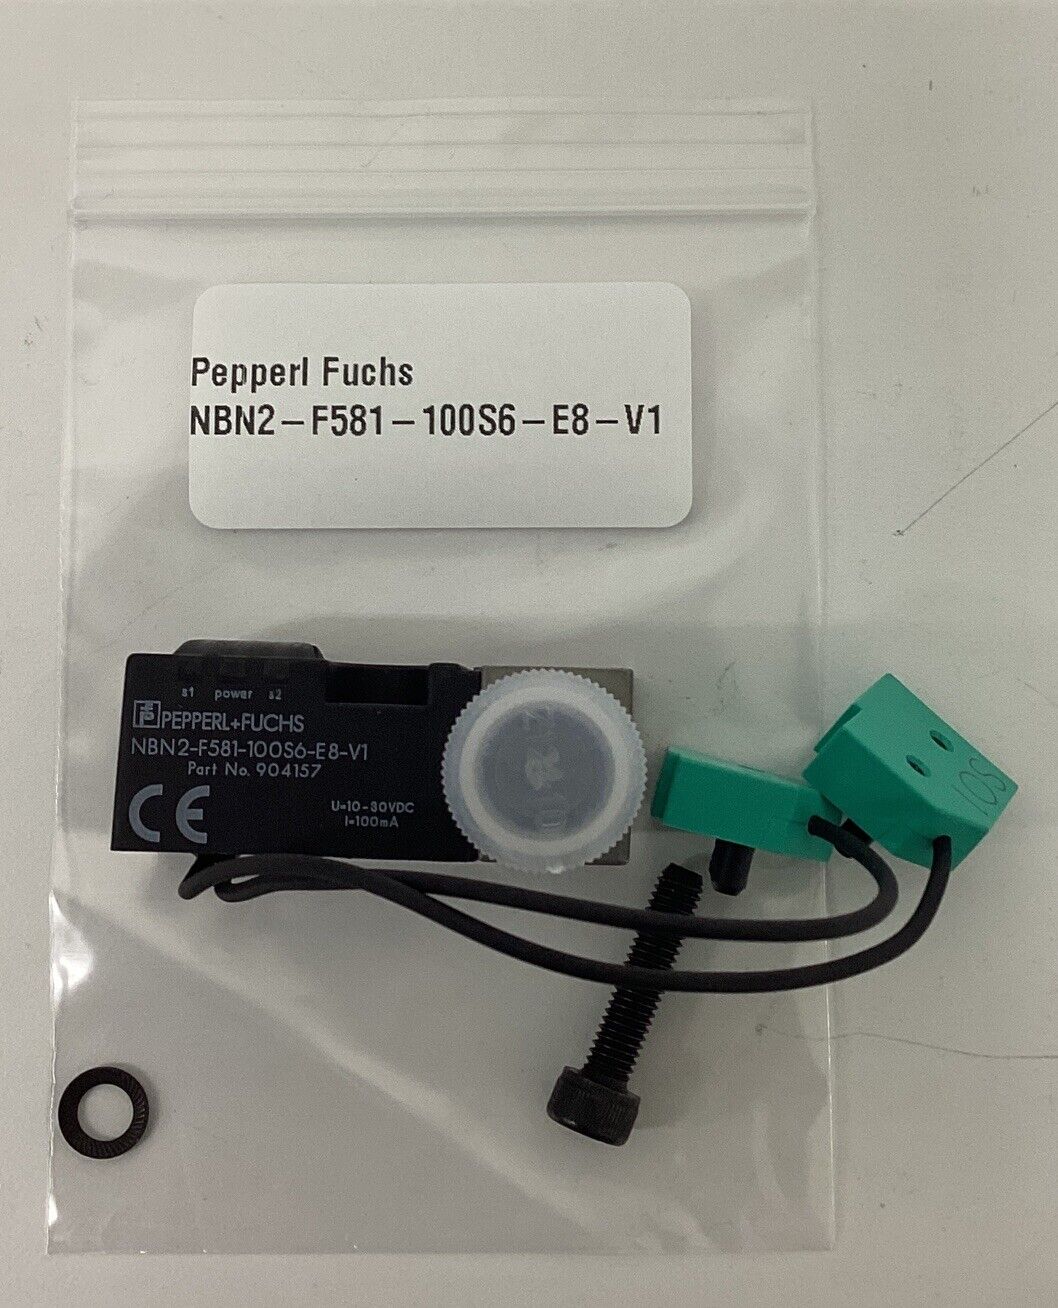 Pepperl Fuchs NBN2-F581-100S6-E8-V1 / 904157 Inductive Sensor (GR113)